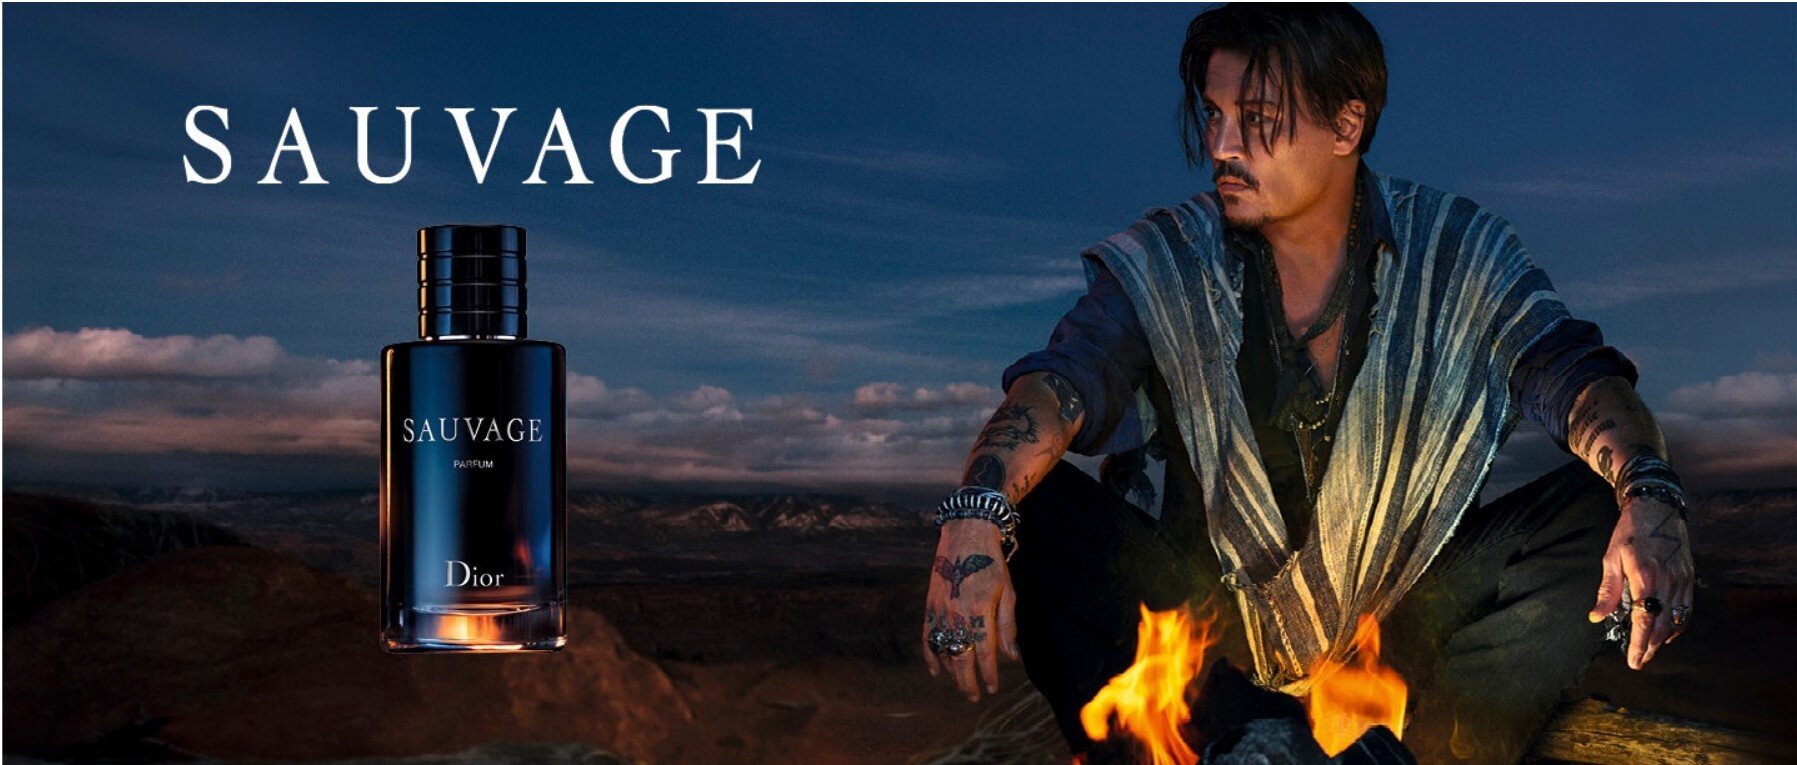 Dior Johnny Depp.jpg